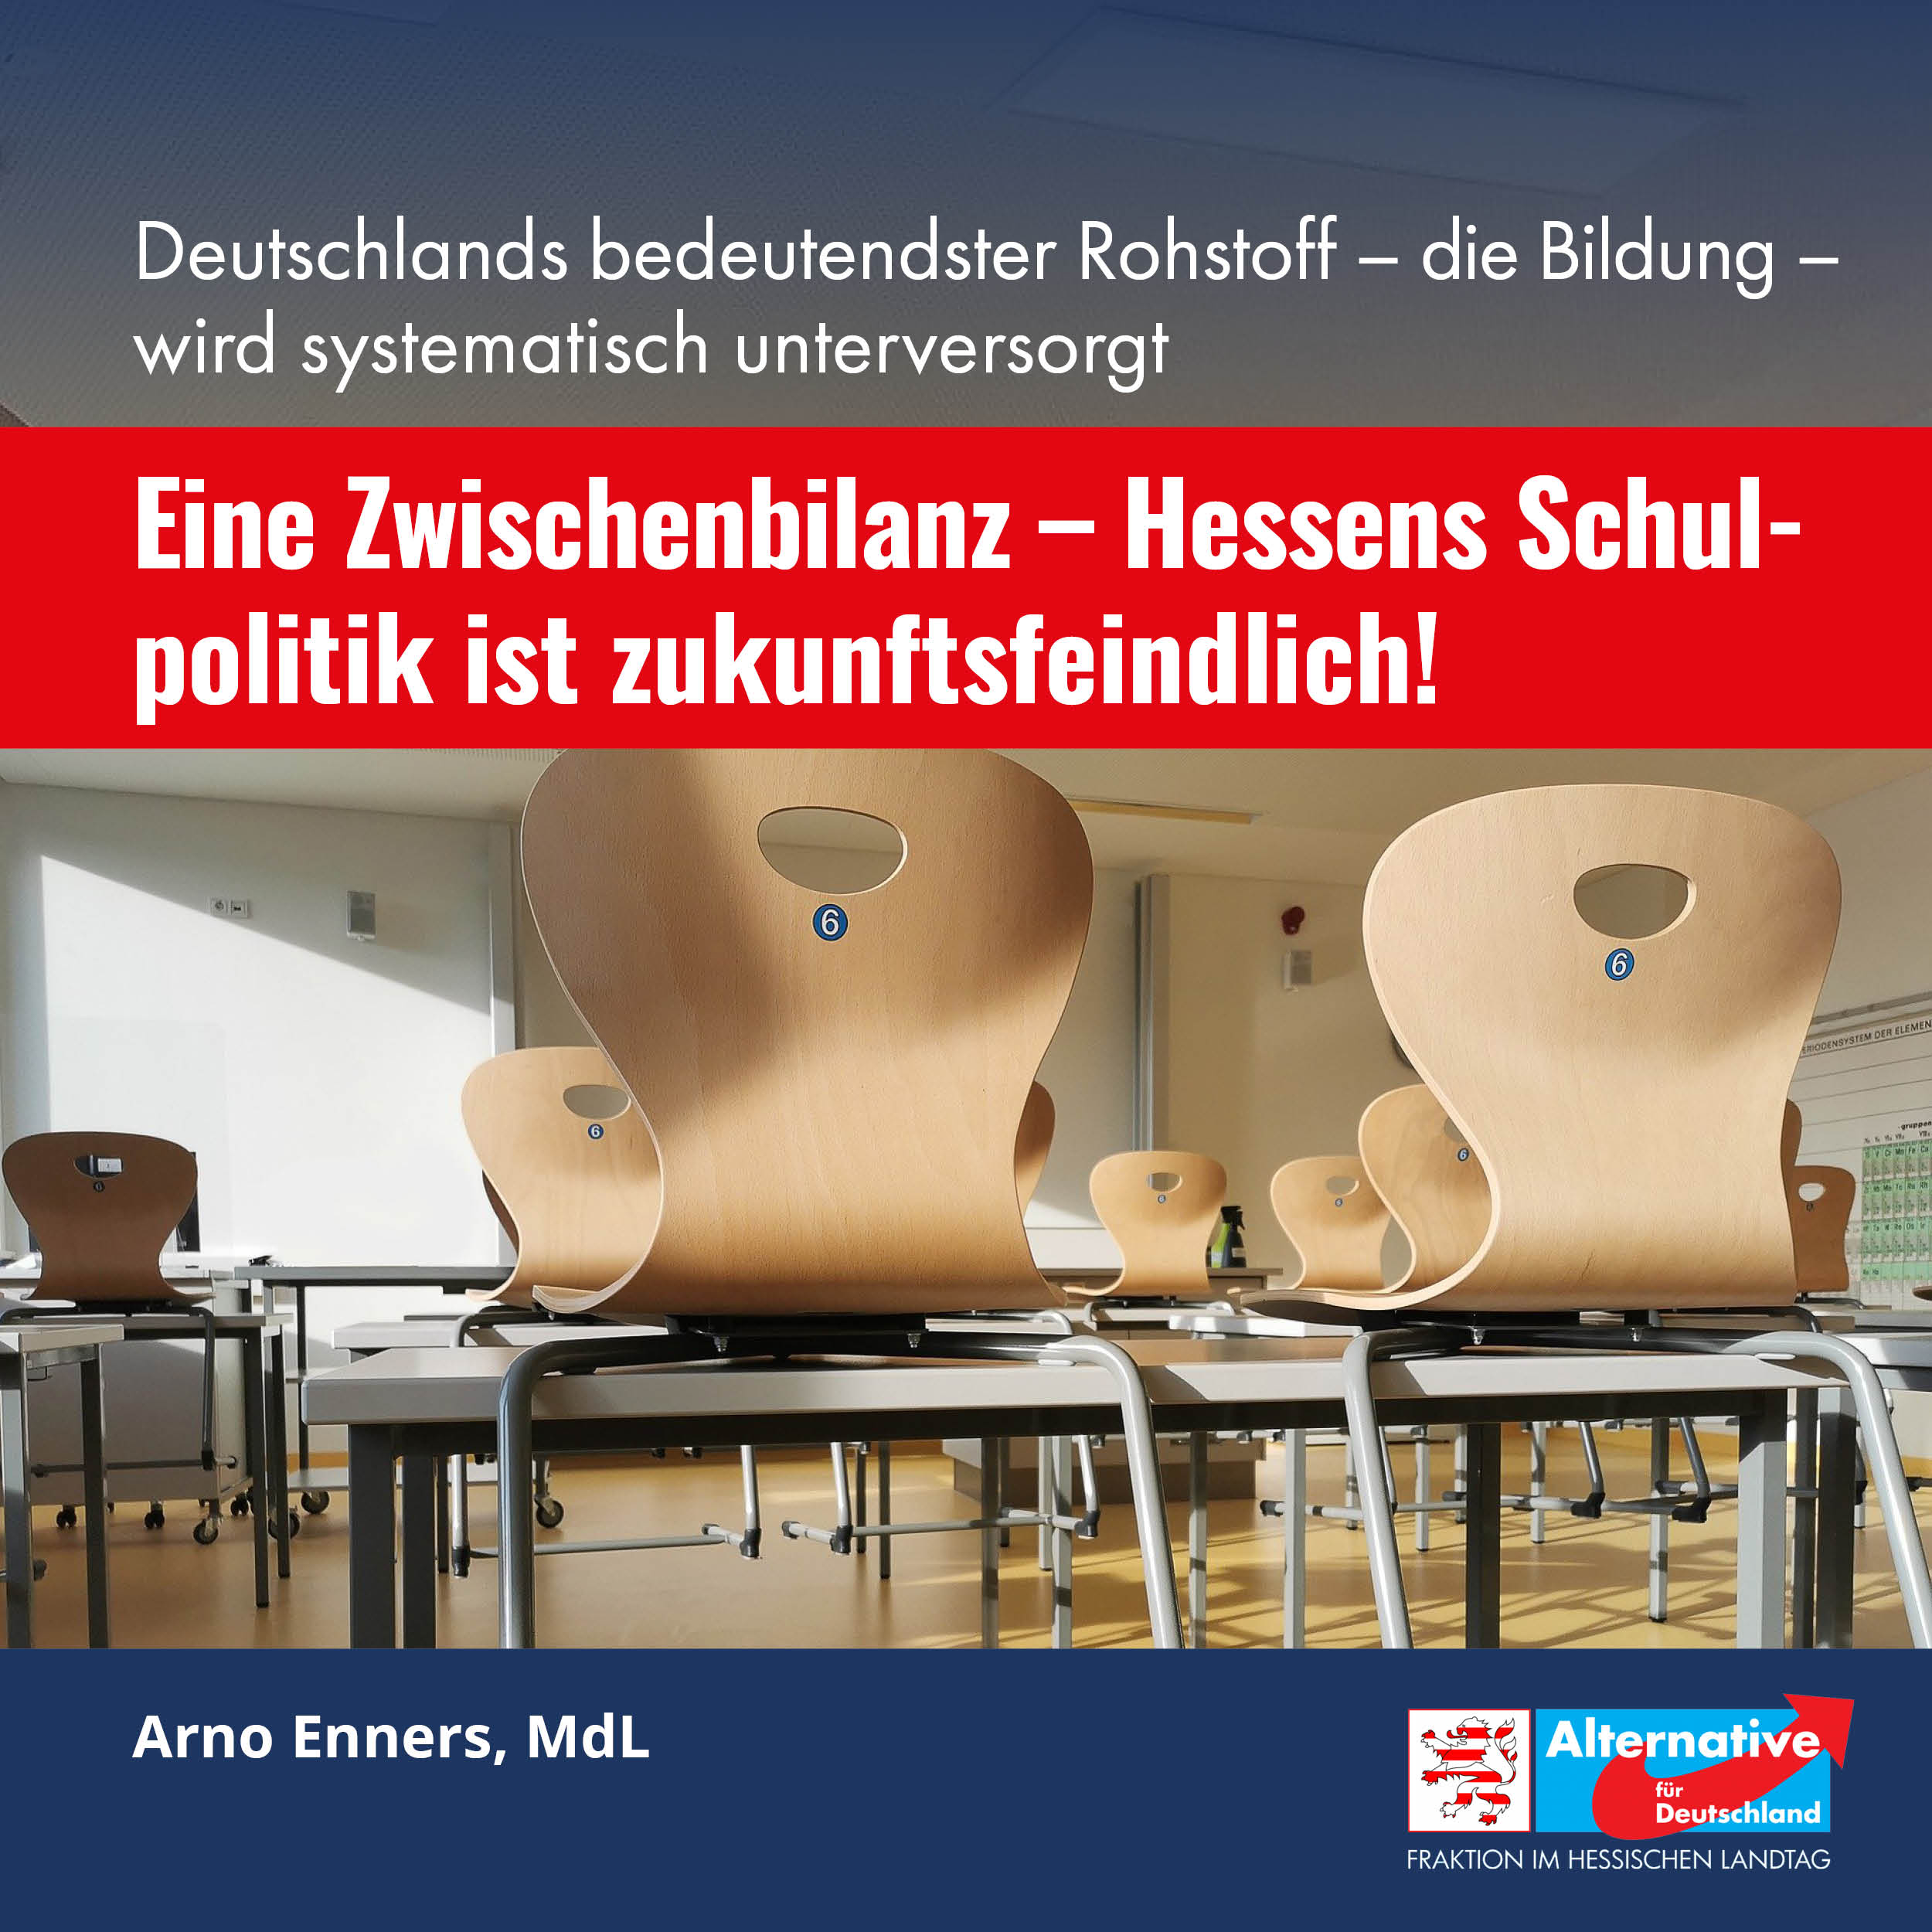 You are currently viewing Eine Zwischenbilanz – Hessens Schulpolitik ist zukunftsfeindlich